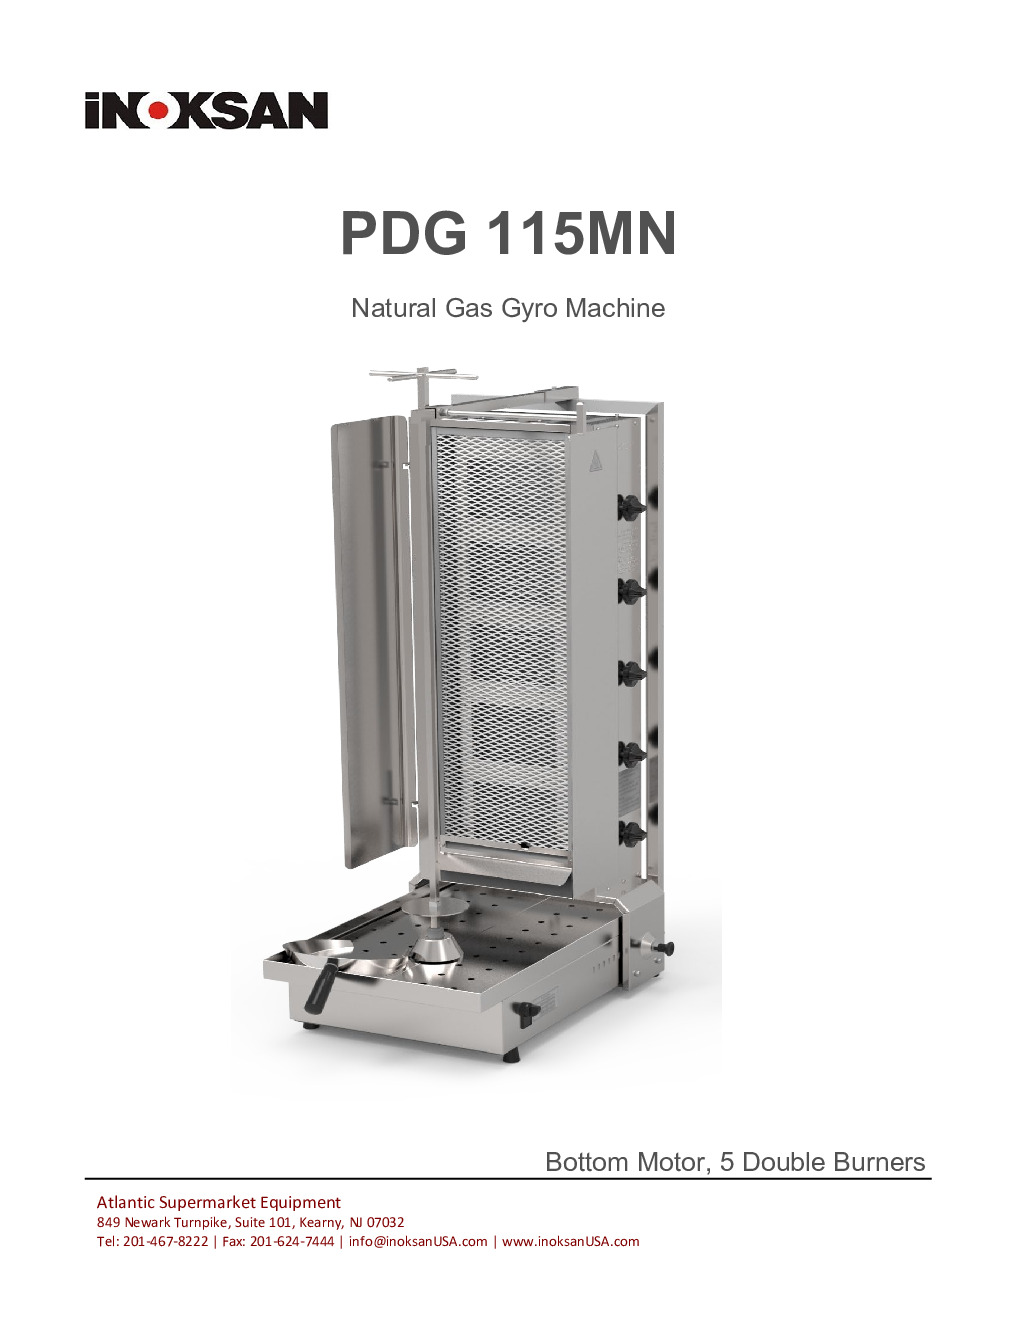 Inoksan PDG115MN Gas Vertical Broiler (Gyro)